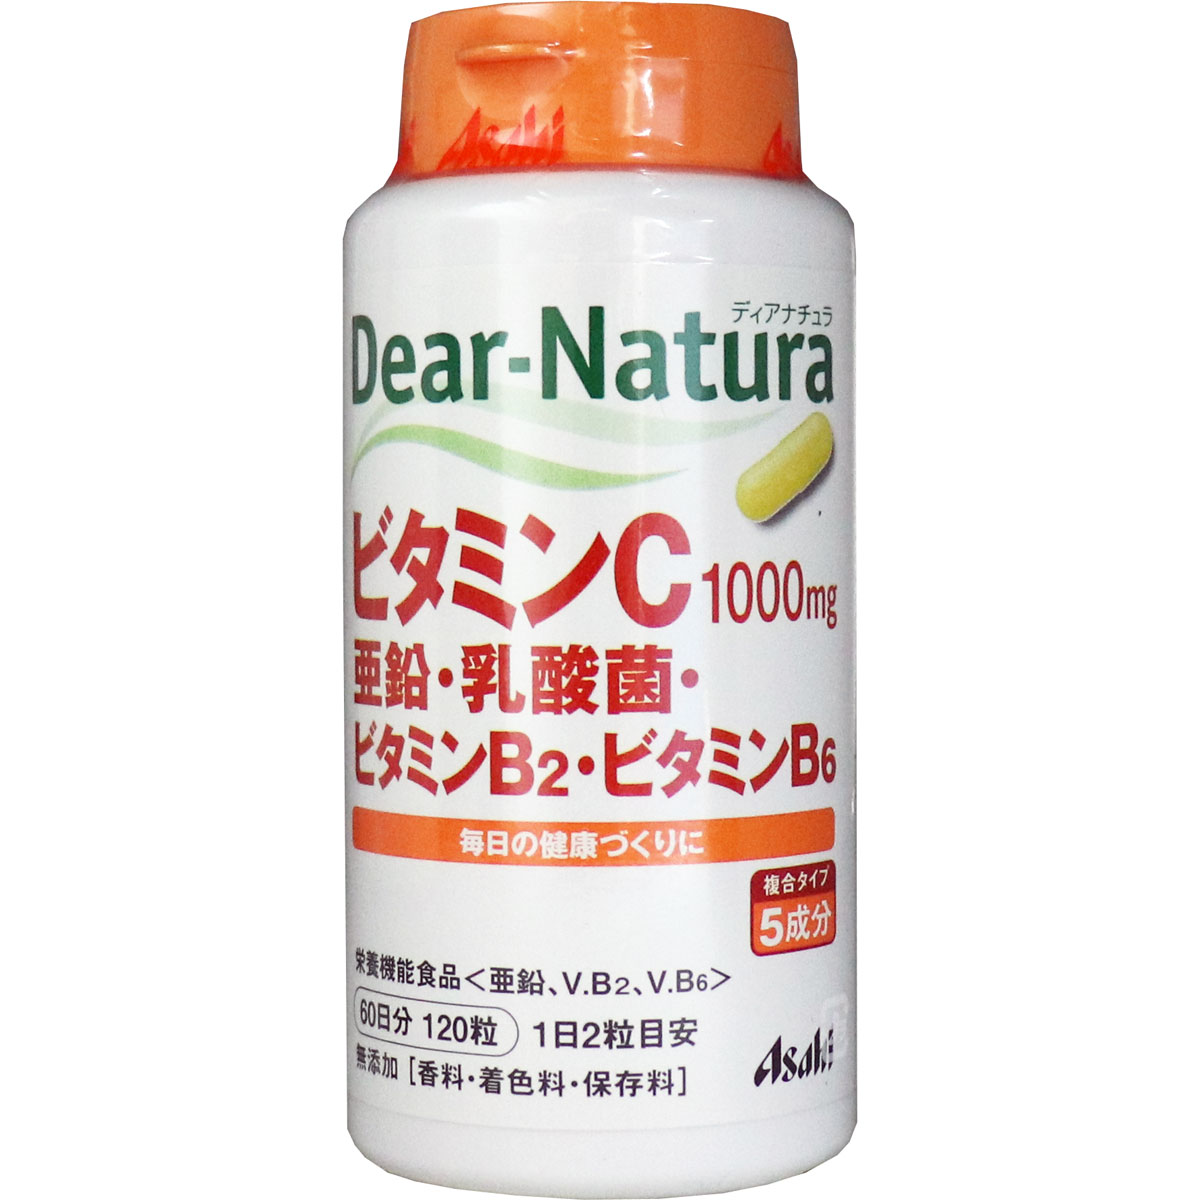 アサヒ アサヒ ディアナチュラ ビタミンC・亜鉛・乳酸菌・ビタミンB2・ビタミンB6 60日分 120粒 × 5個 Dear-Natura ビタミンC（サプリメント）の商品画像